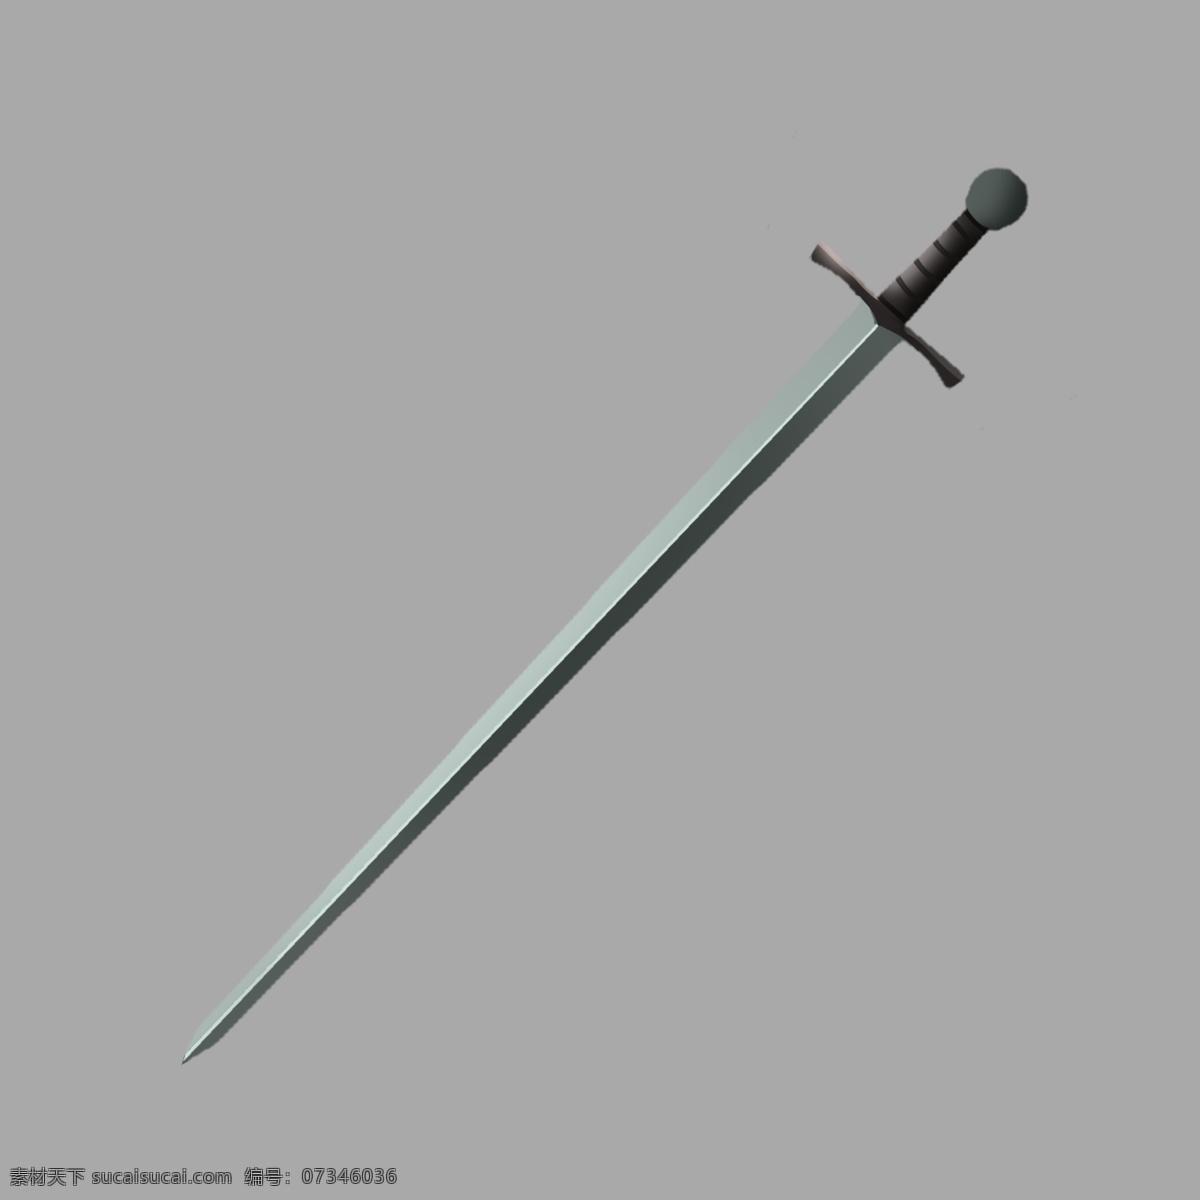 锋利 长剑 兵器 插画 长剑兵器 刀剑 一把剑 剑 锋利的剑 锋利的长剑 游戏刀剑